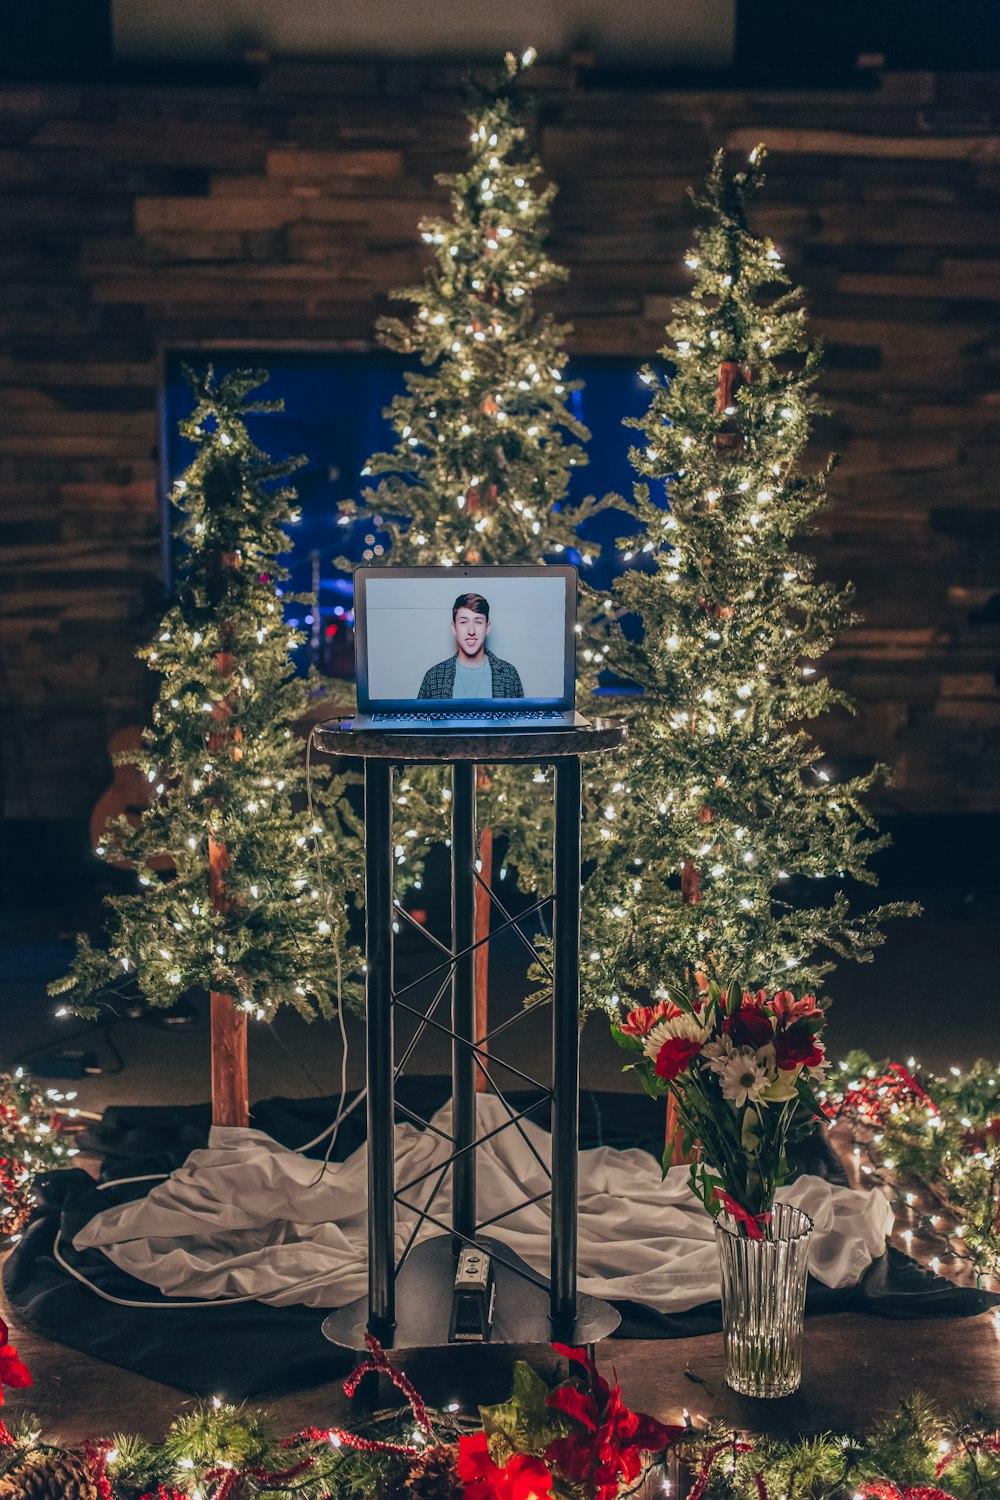 gray monitor turned on near holiday trees